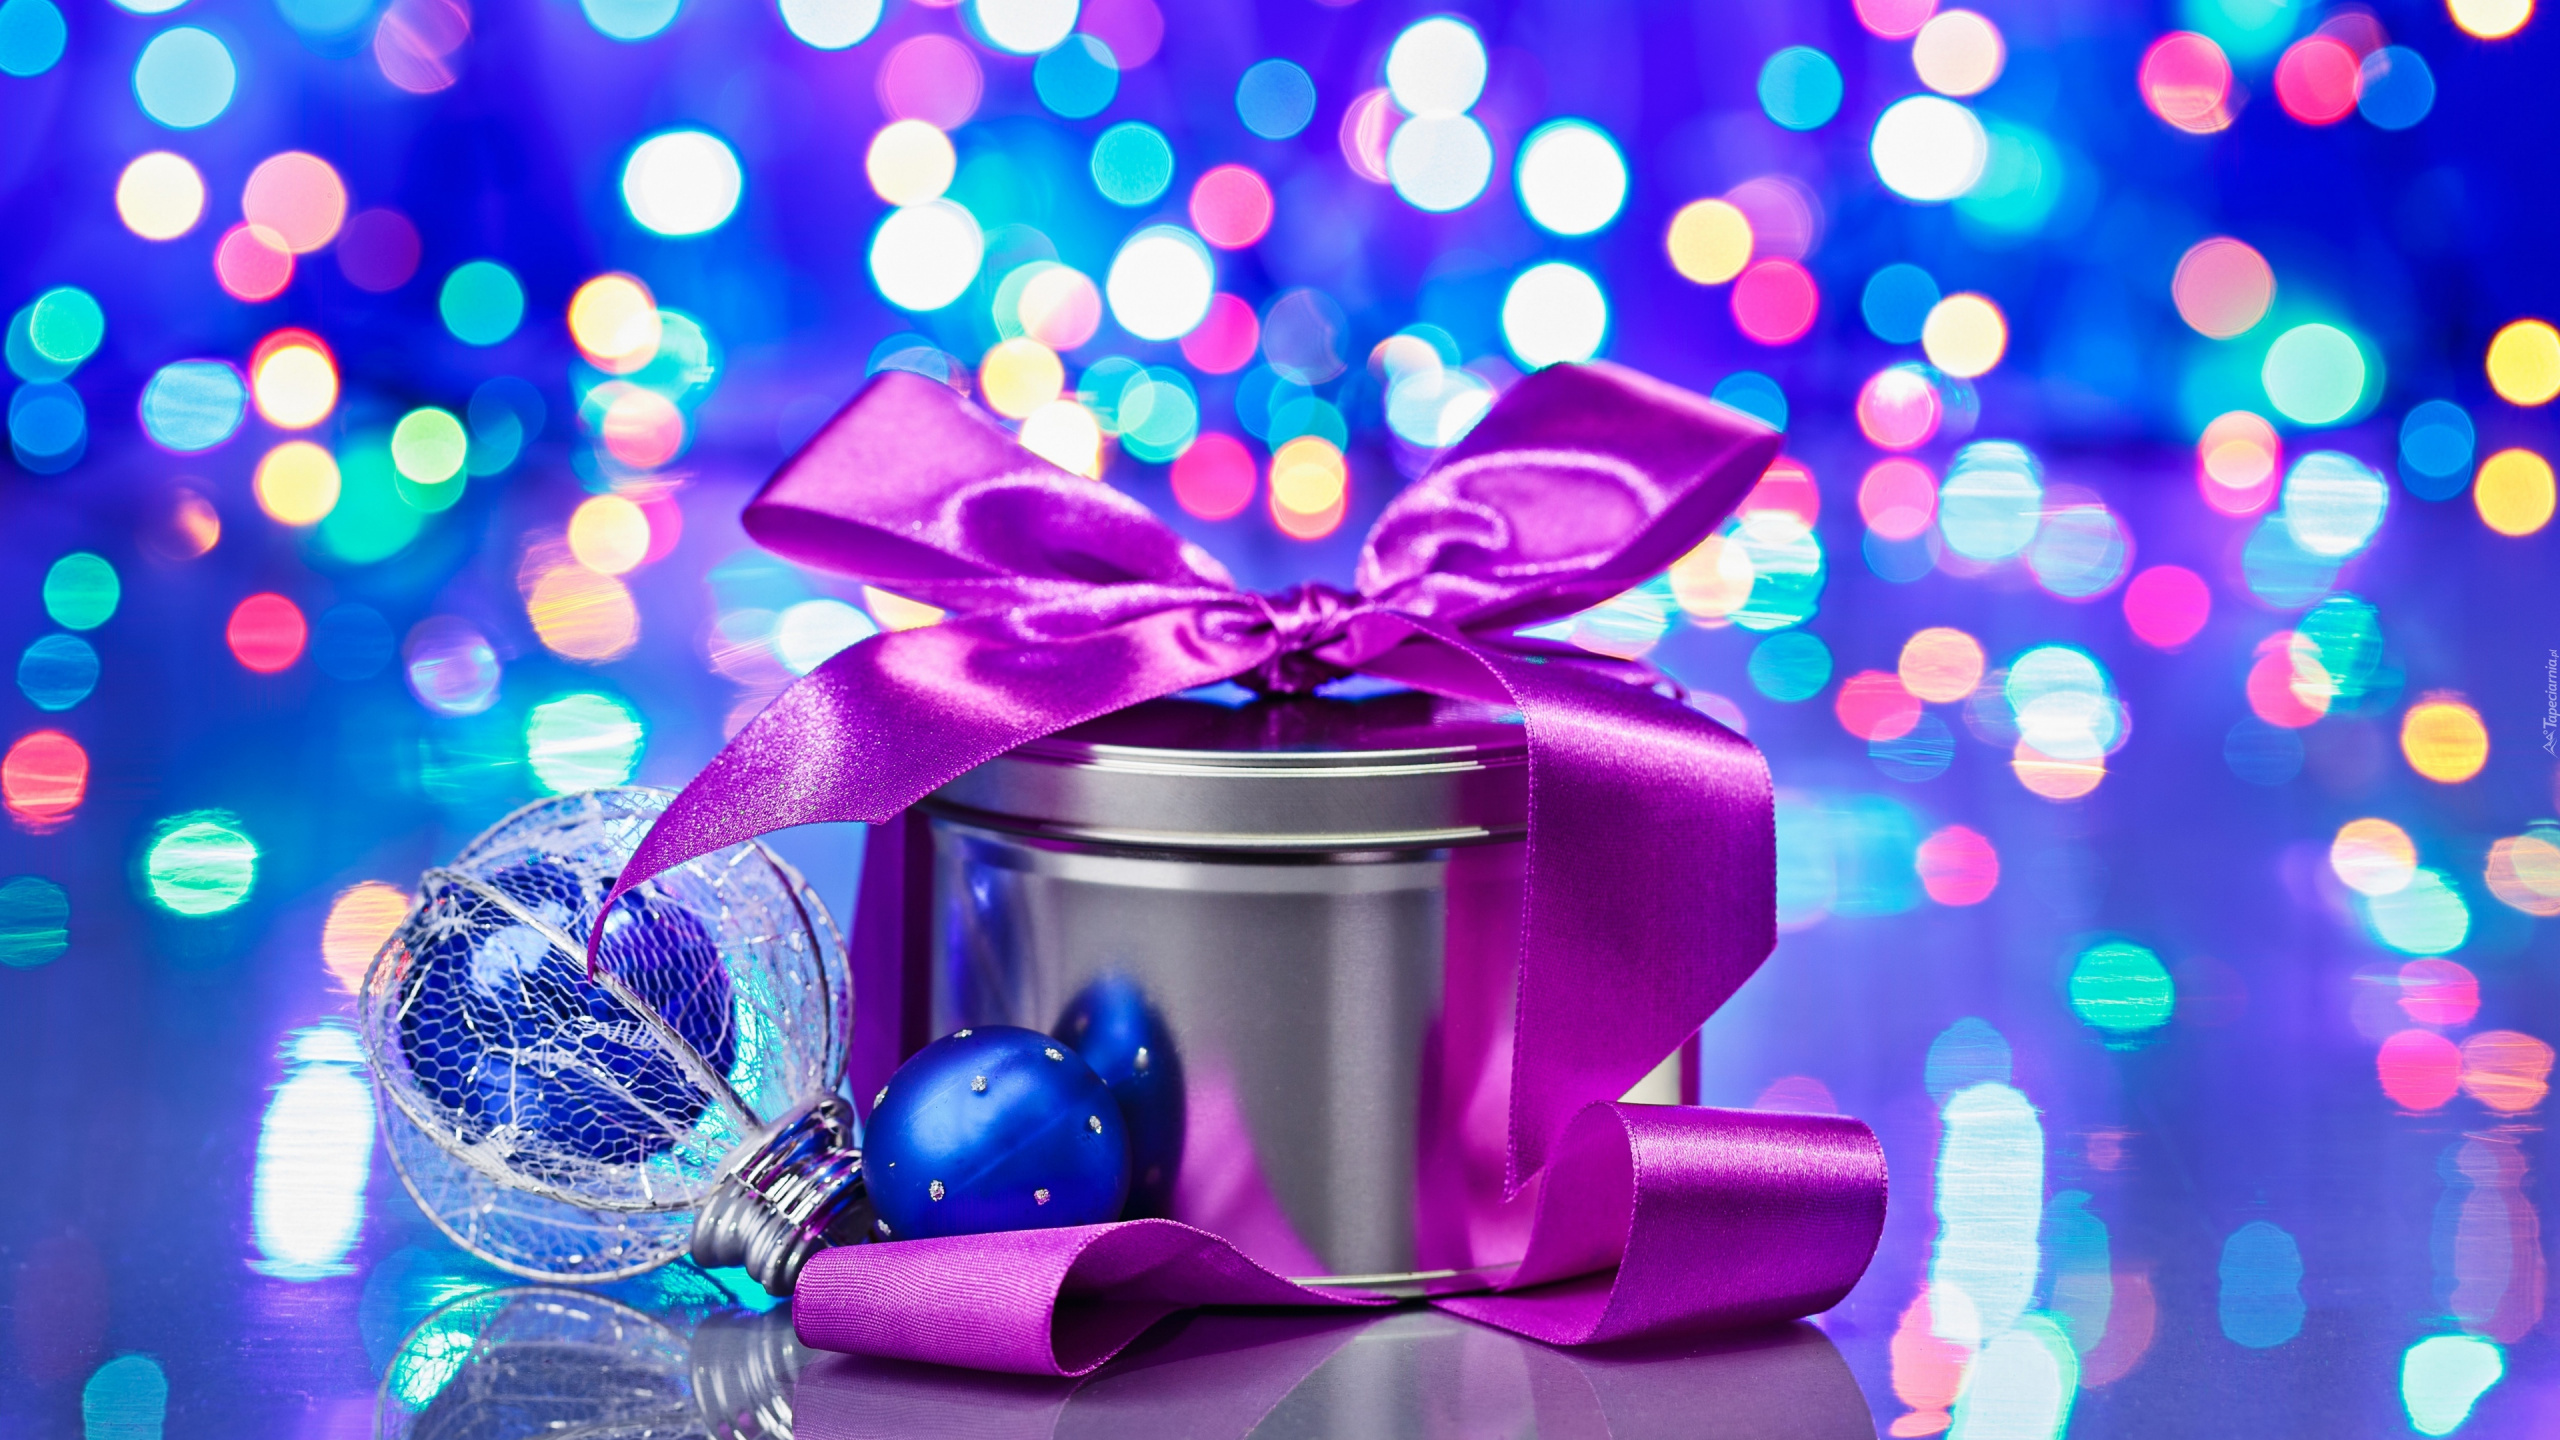 Le Jour De Noël, Nouvelle Année, Purple, Blue, Violette. Wallpaper in 2560x1440 Resolution